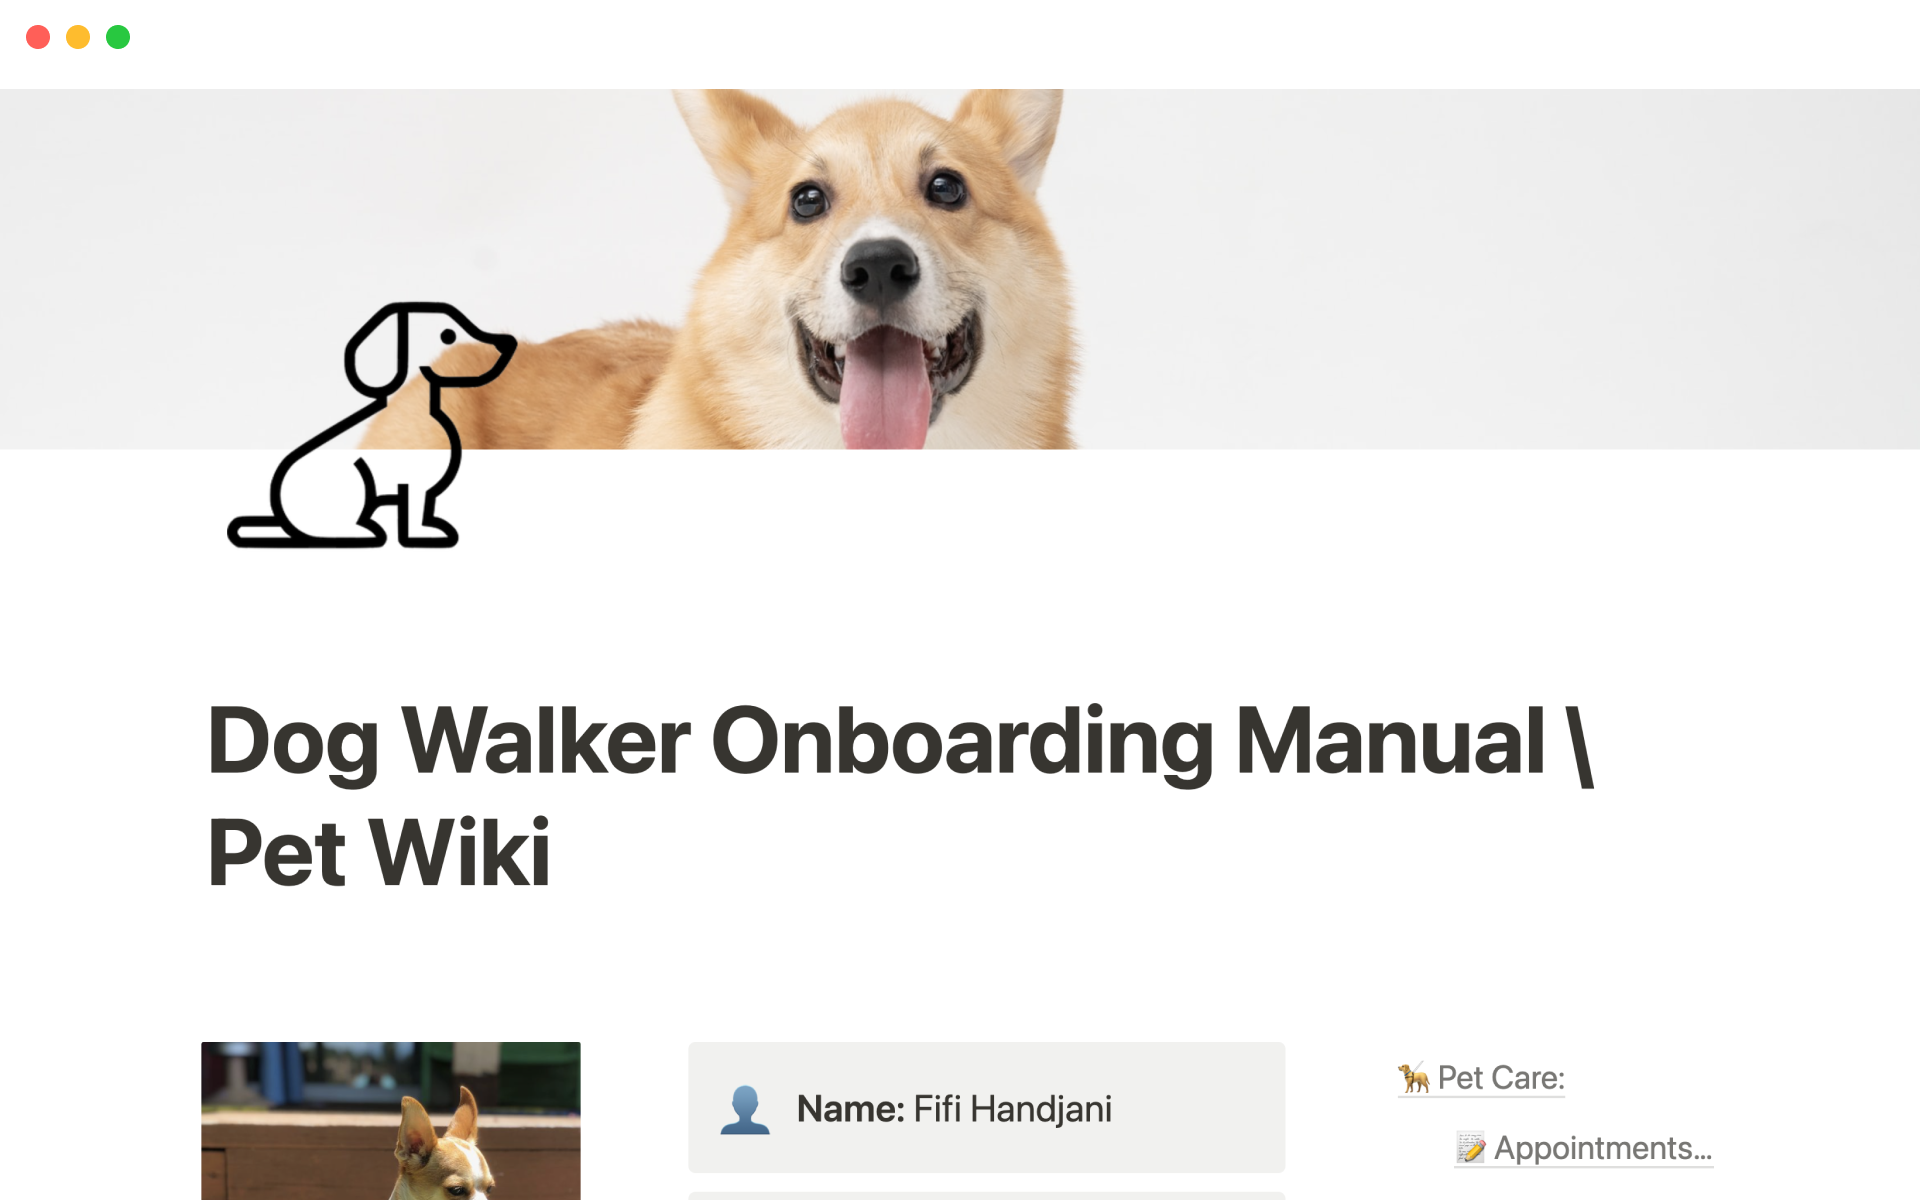 Aperçu du modèle de Dog walker onboarding manual